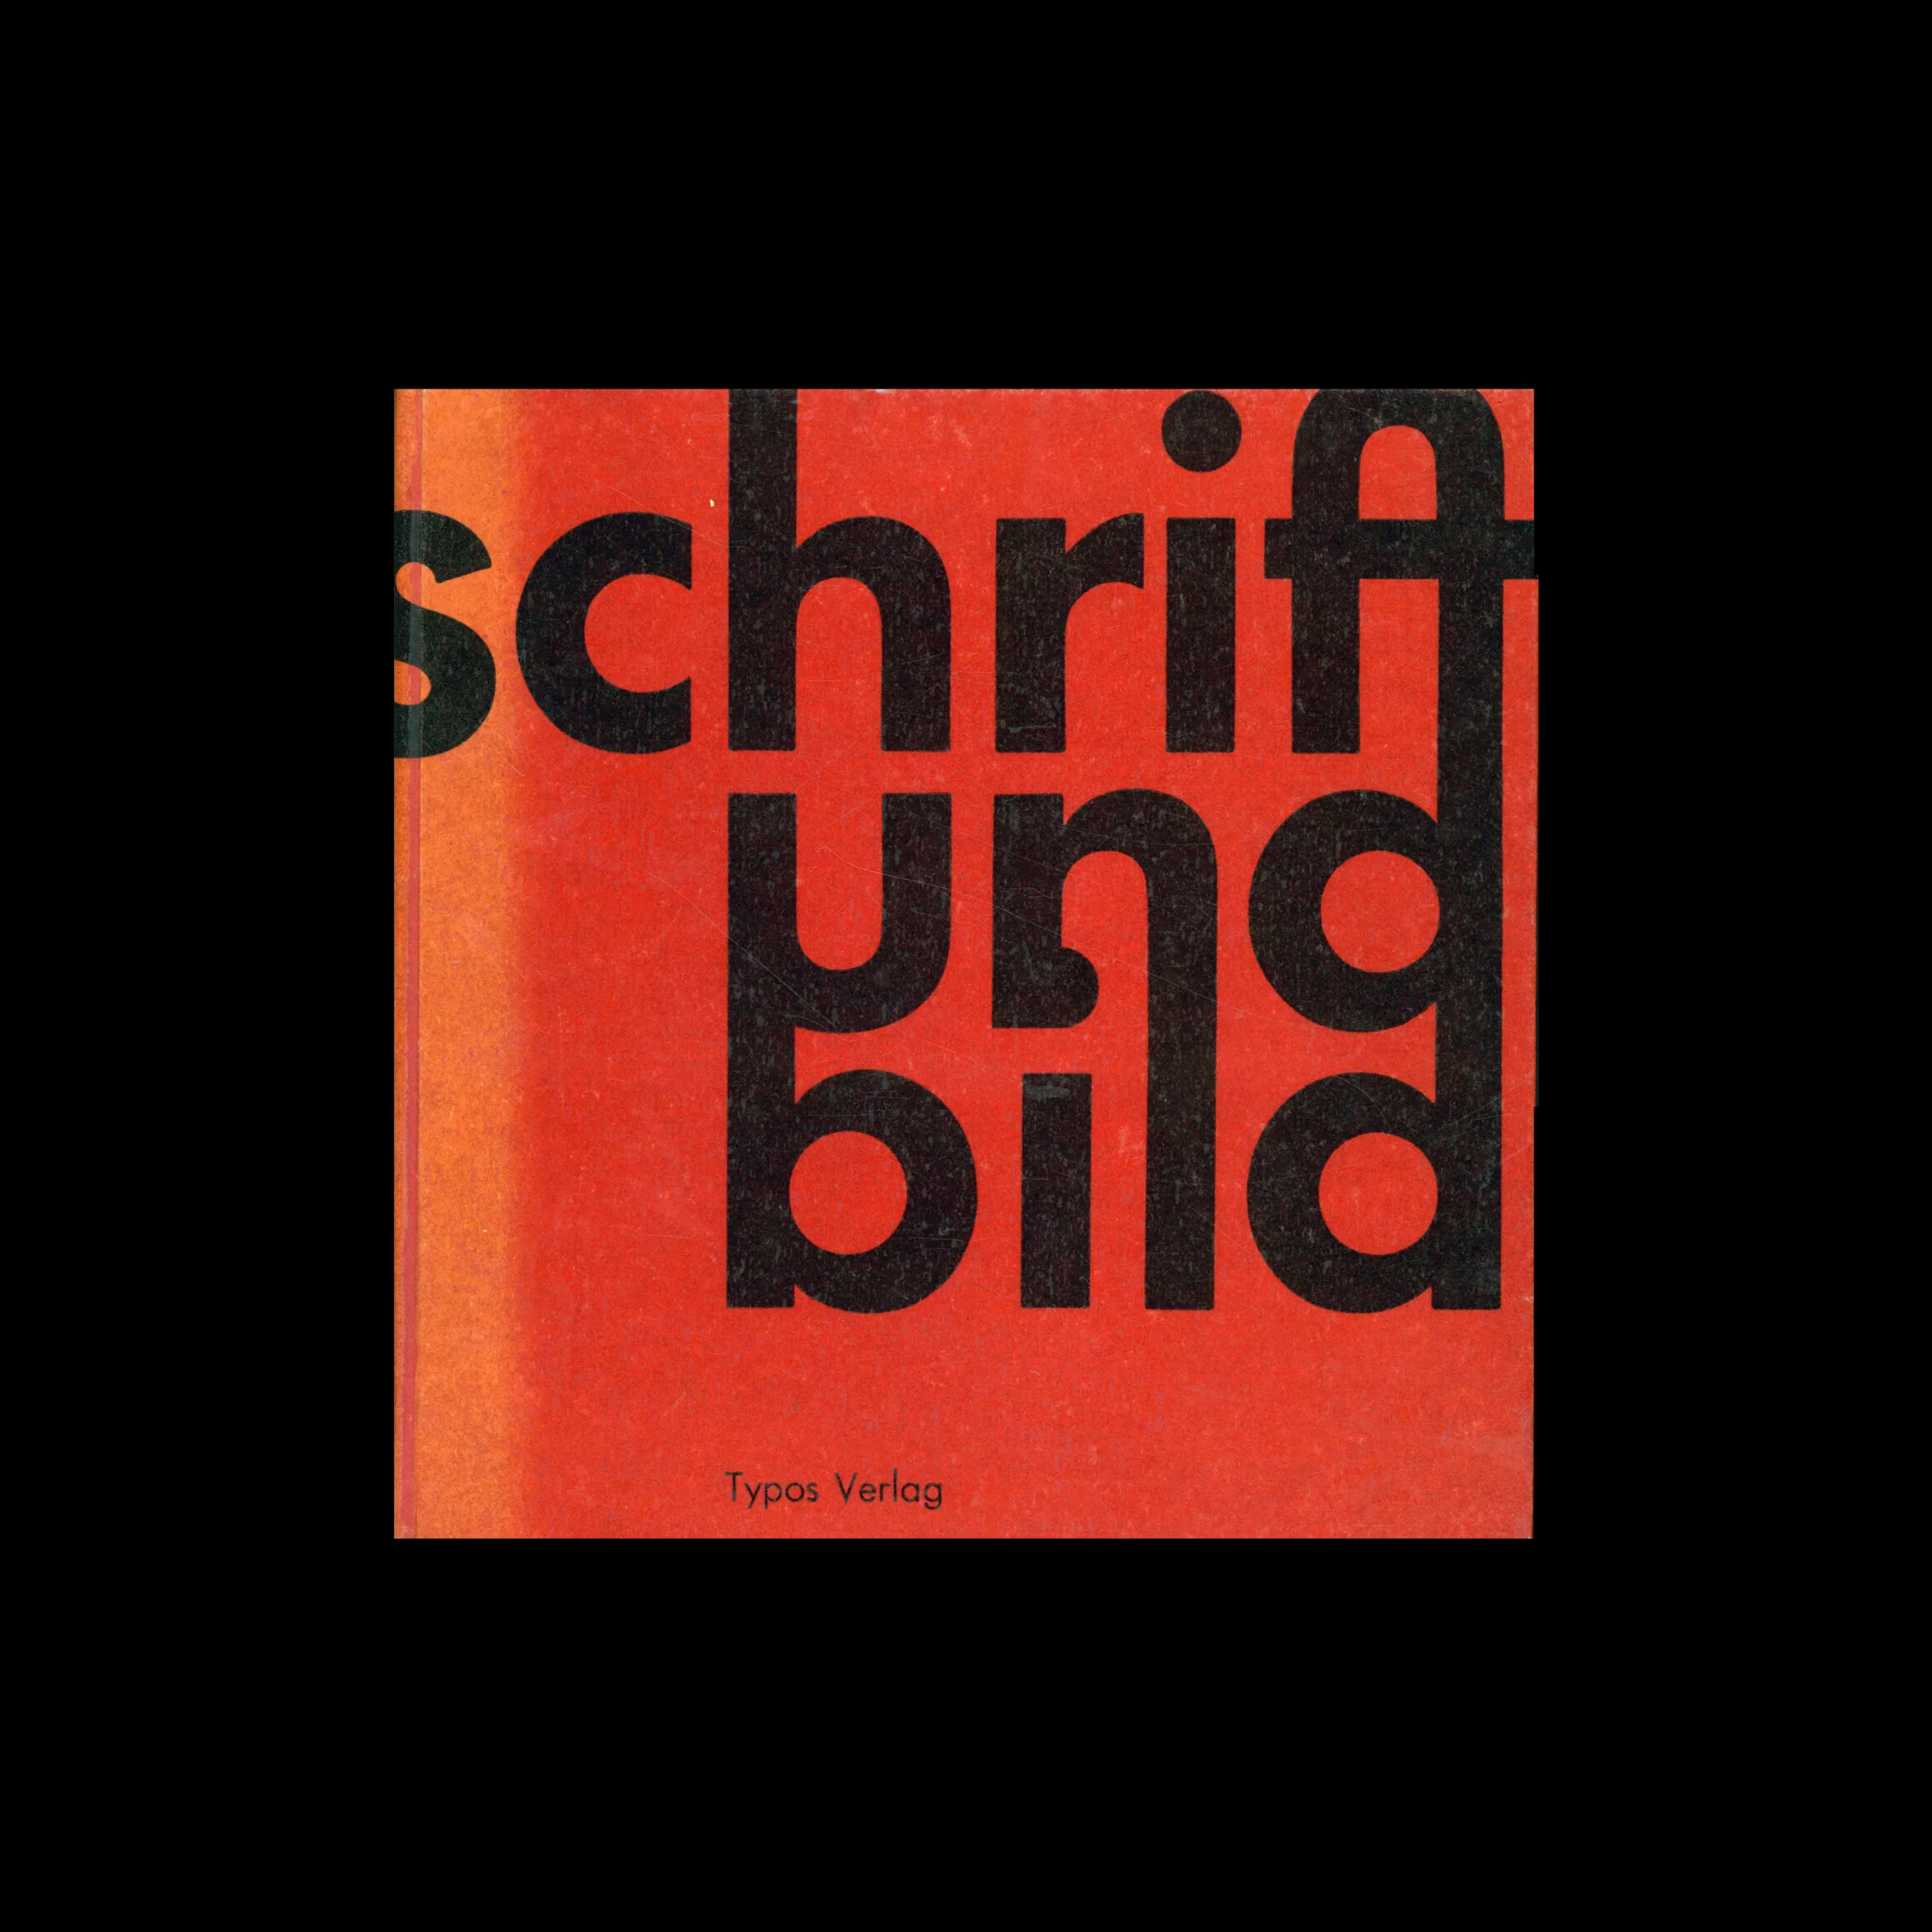 Schrift und Bild, Wolfgang Schmidt, Typos Verlag, 1963